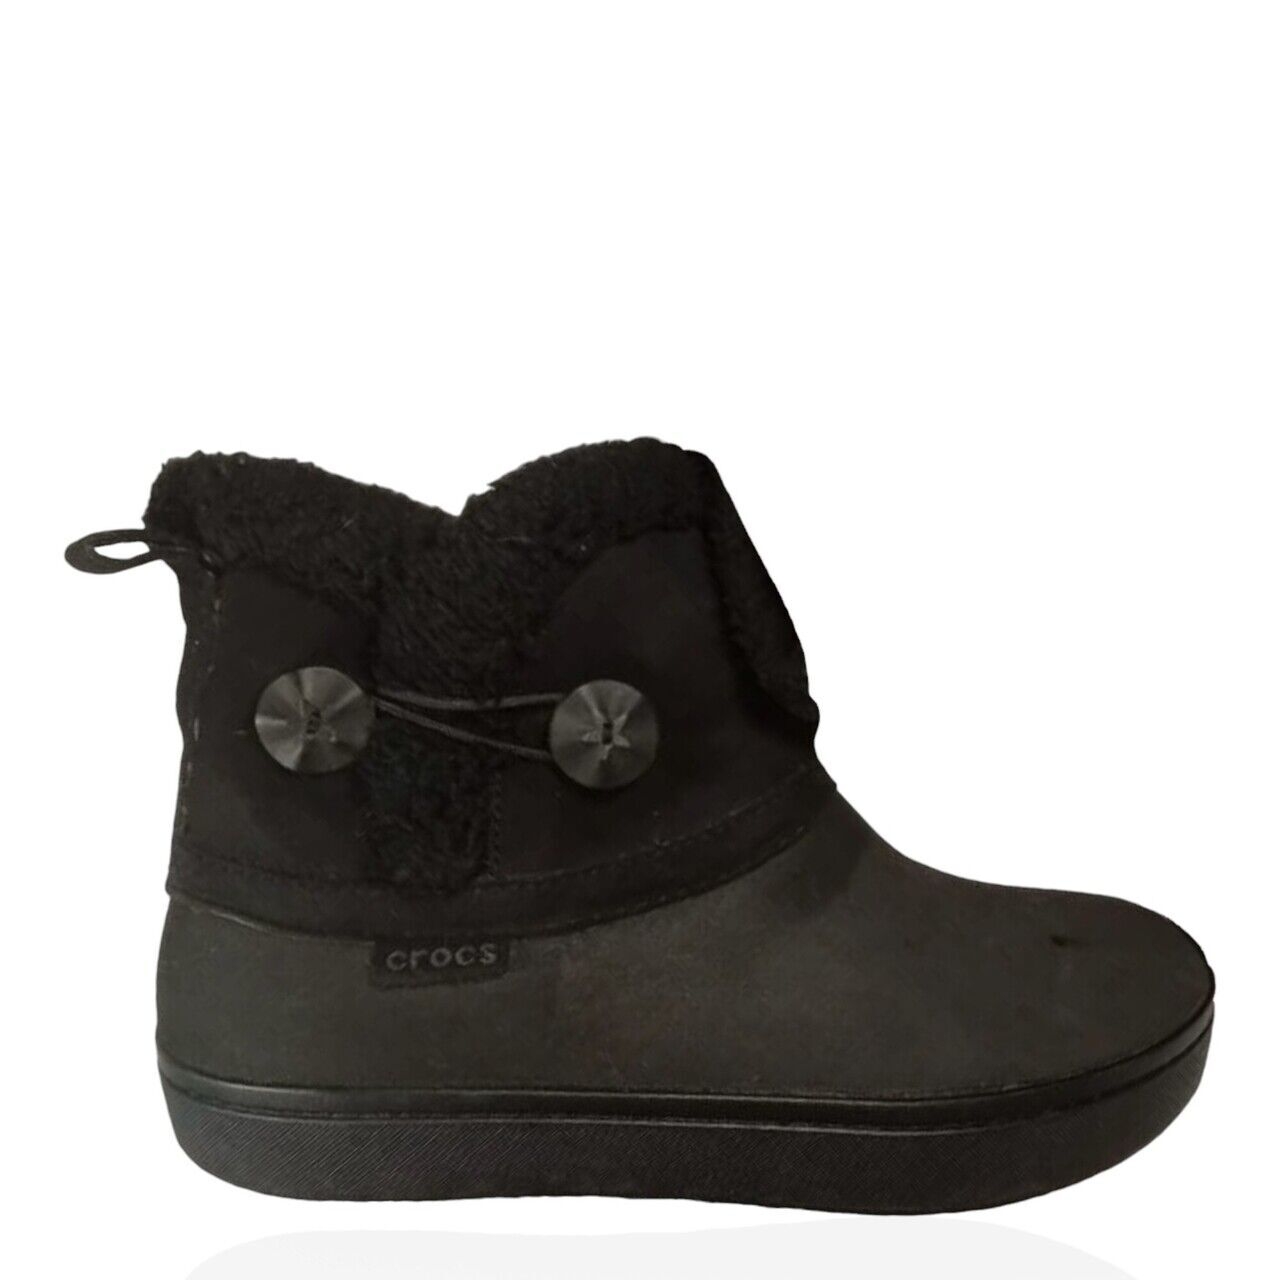 Crocs Black Boots